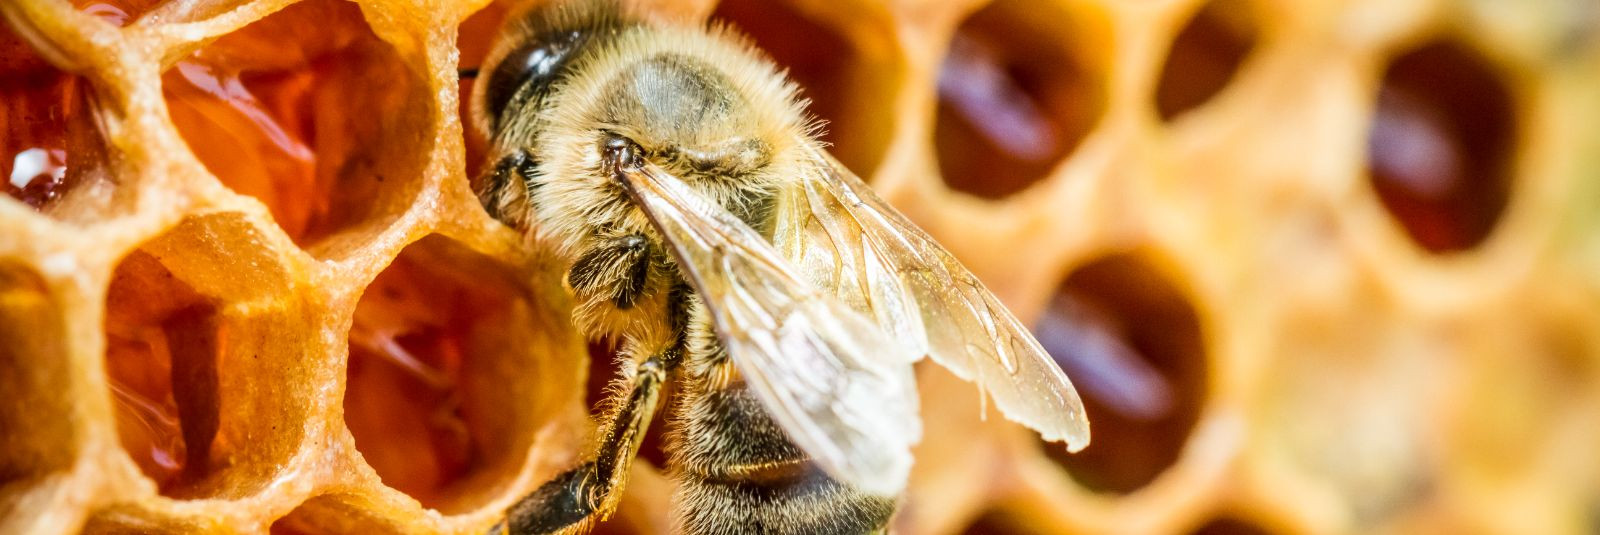 Mesilased on looduse imetegijad, kelle tegevus mõjutab meie ökosüsteemi ...